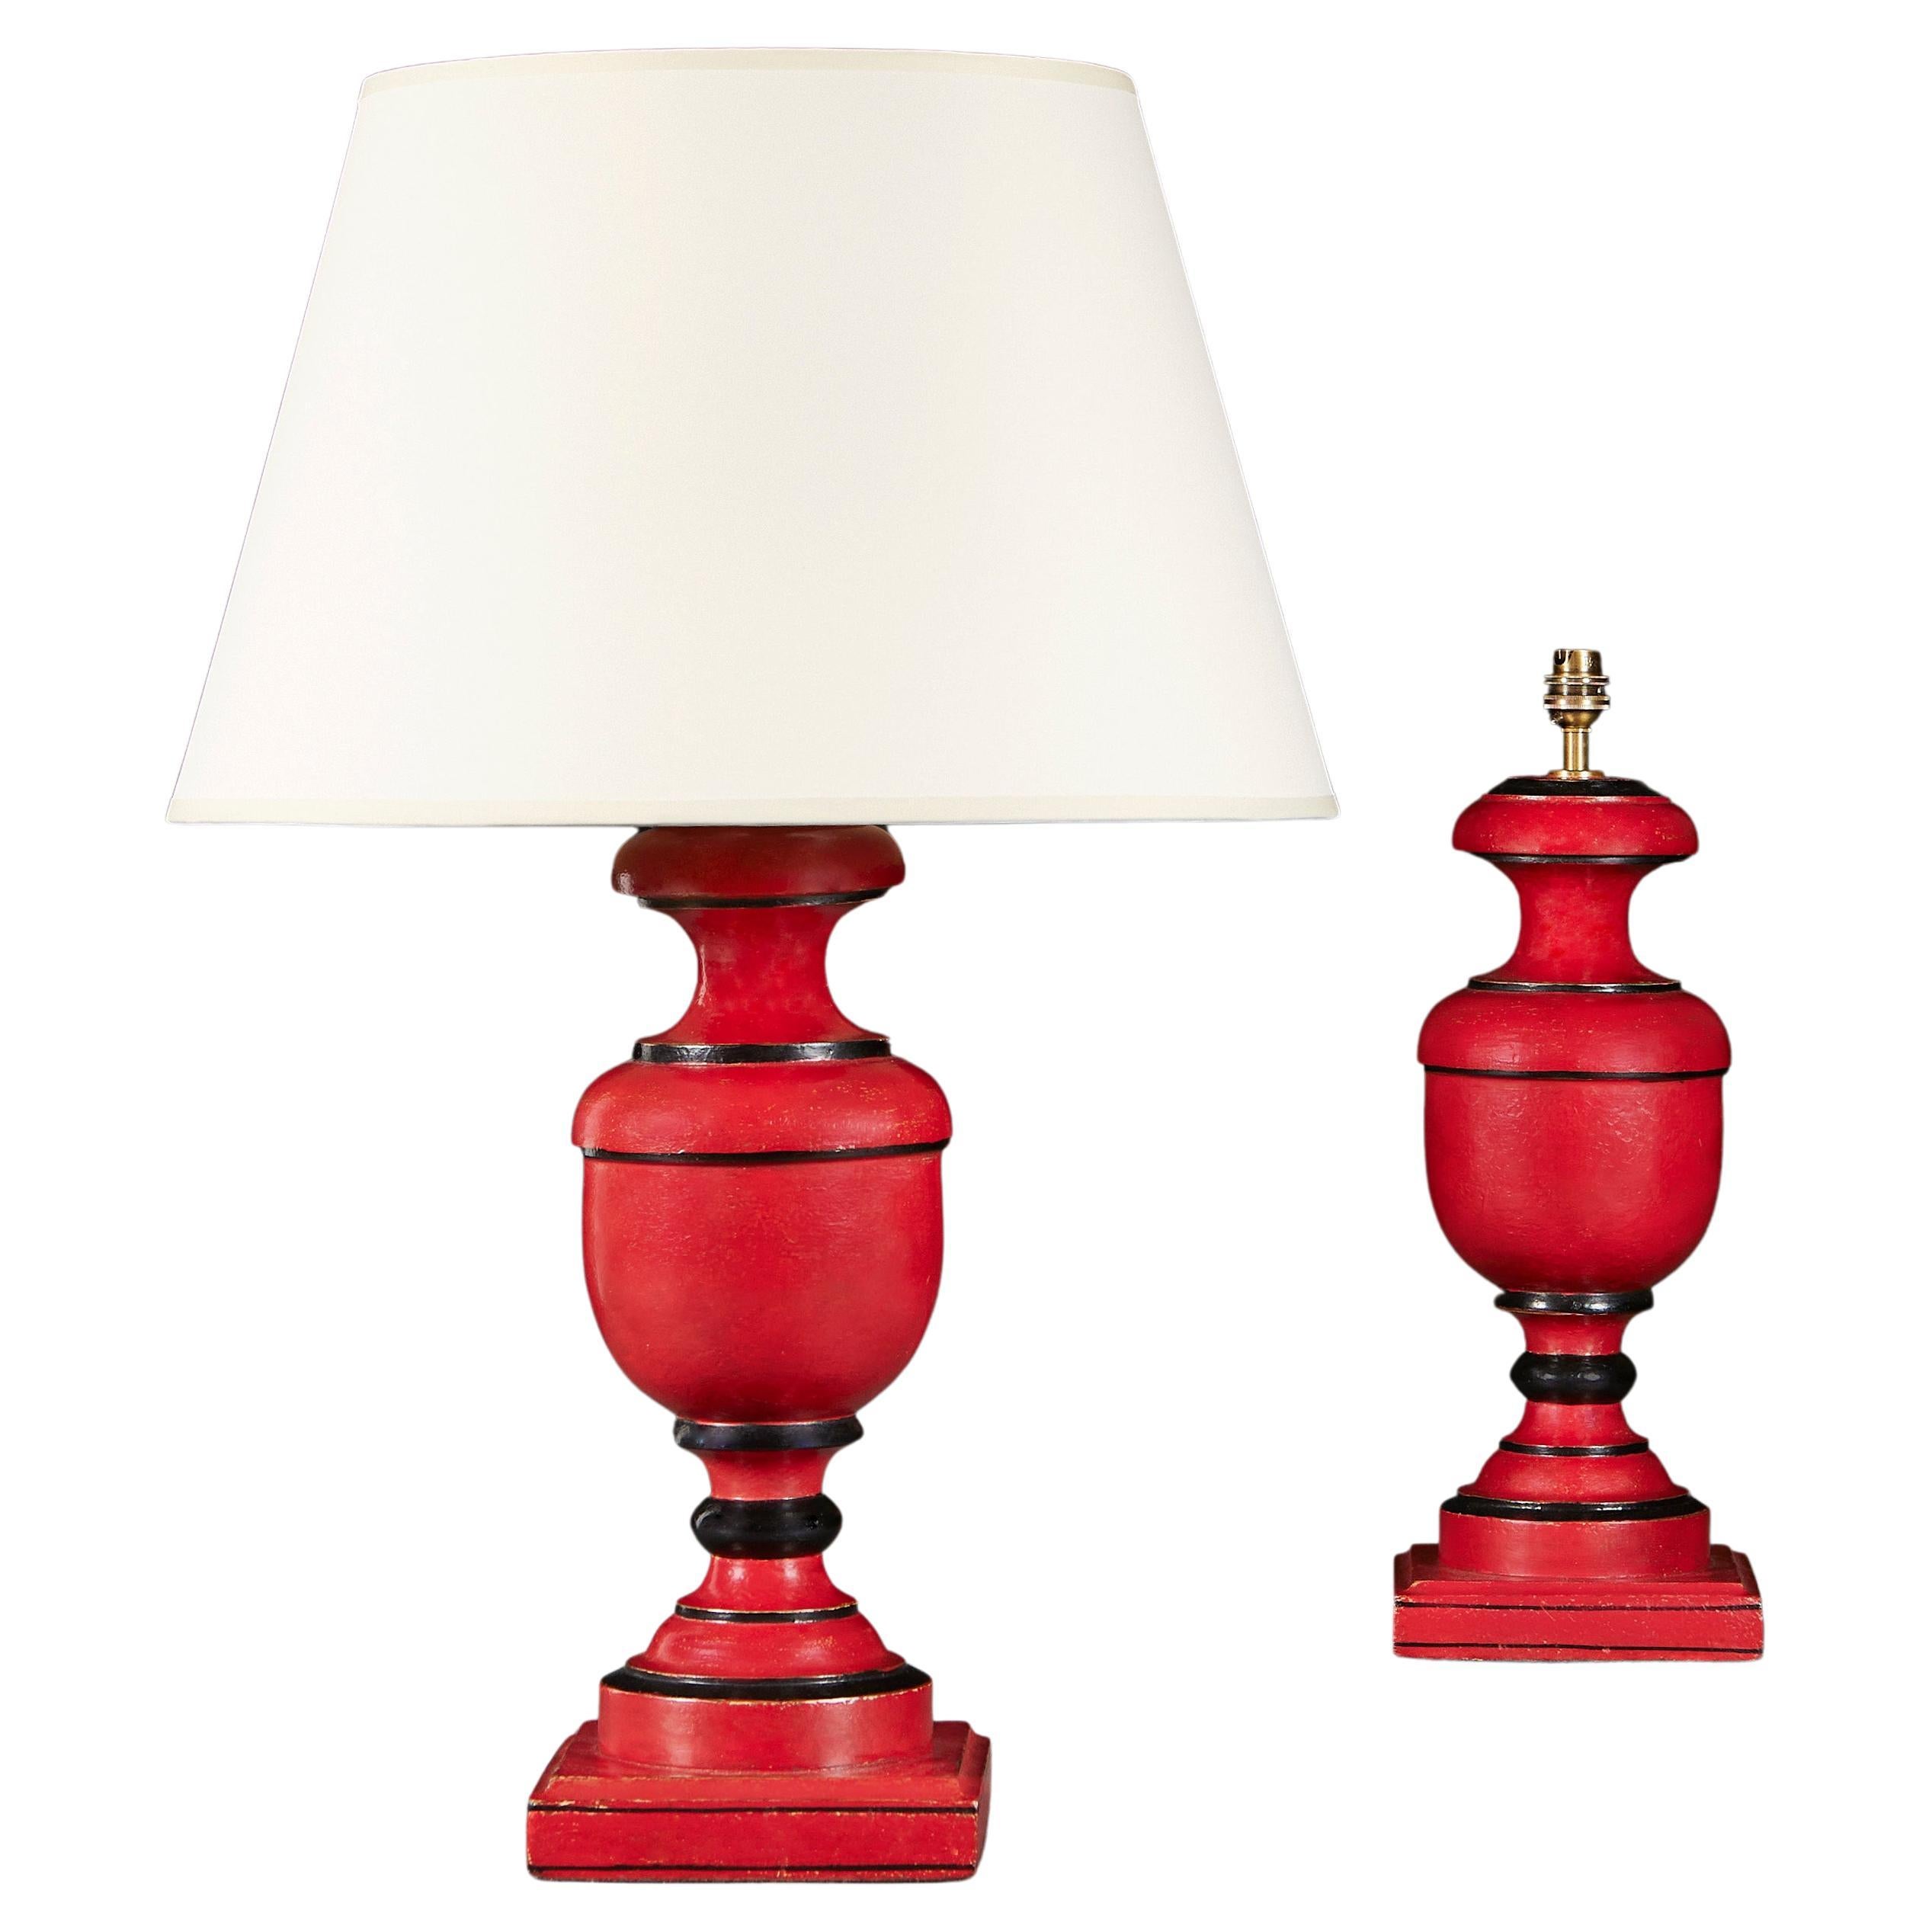 Paire de lampes anglo-indiennes peintes en rouge